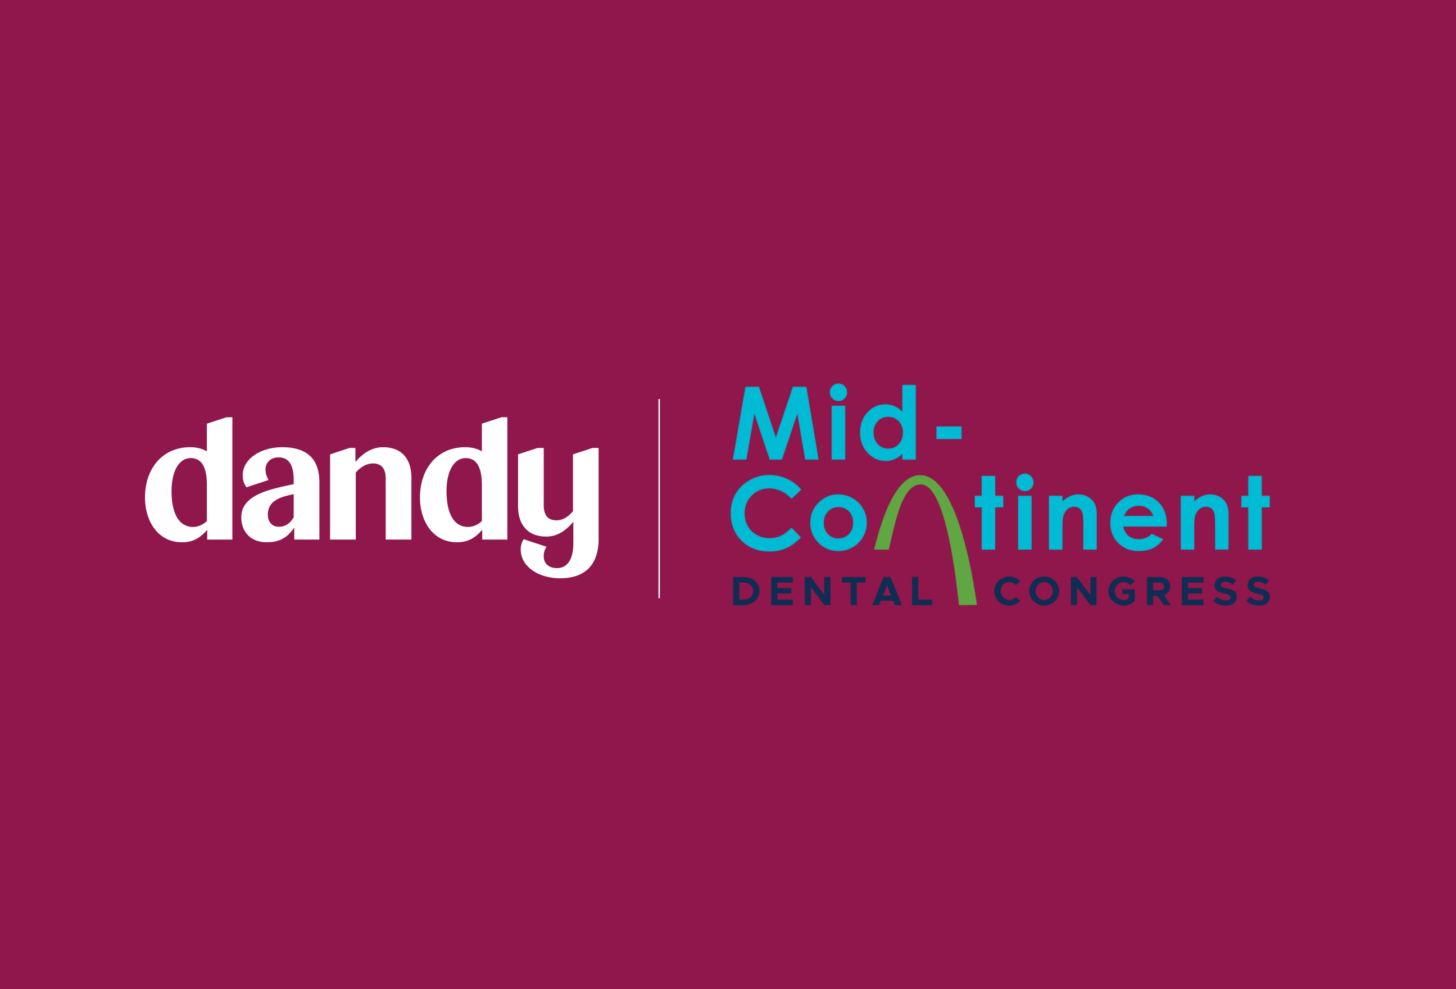 MidContinent Dental Congress 2023 Dandy